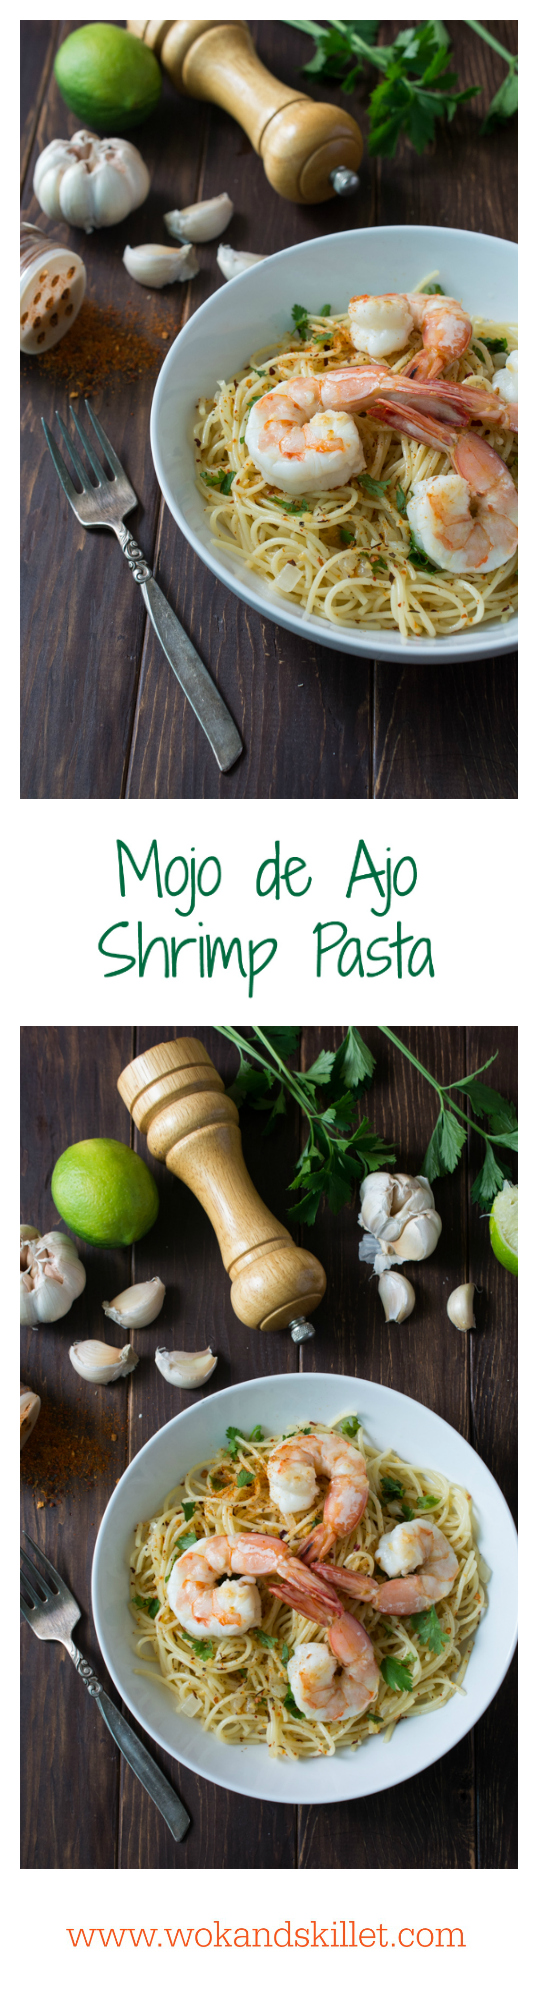 Mojo de Ajo Shrimp Pasta is a Mexican inspired version of Spaghetti aglio e olio. Pasta tossed in Mojo de Ajo (garlic oil), topped with succulent shrimp, chili flakes and fresh parsley or cilantro. 